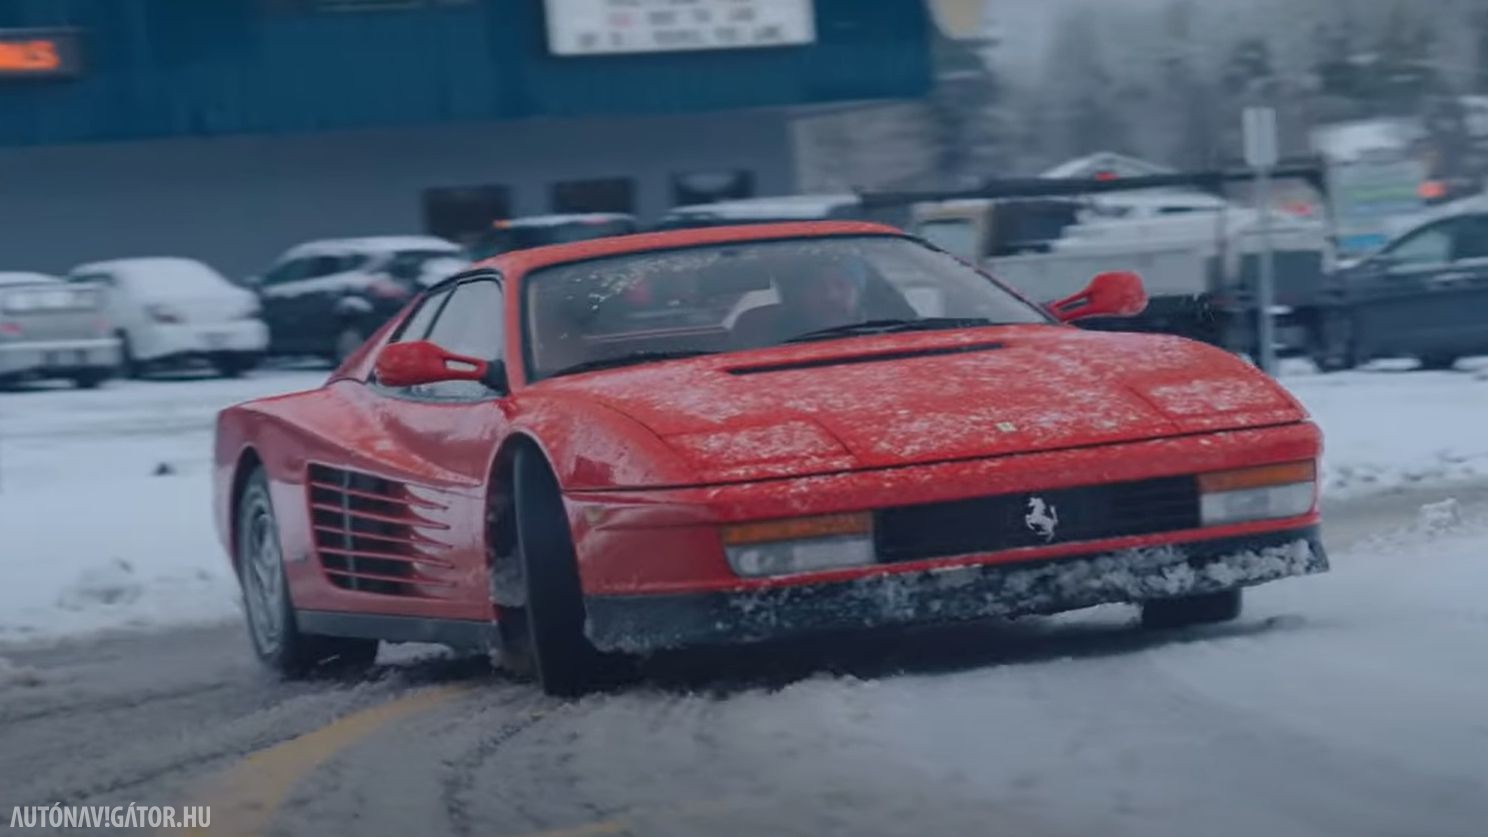 Lerágtuk a körmünket a hóban csúszkáló Ferrari Testarossa láttán